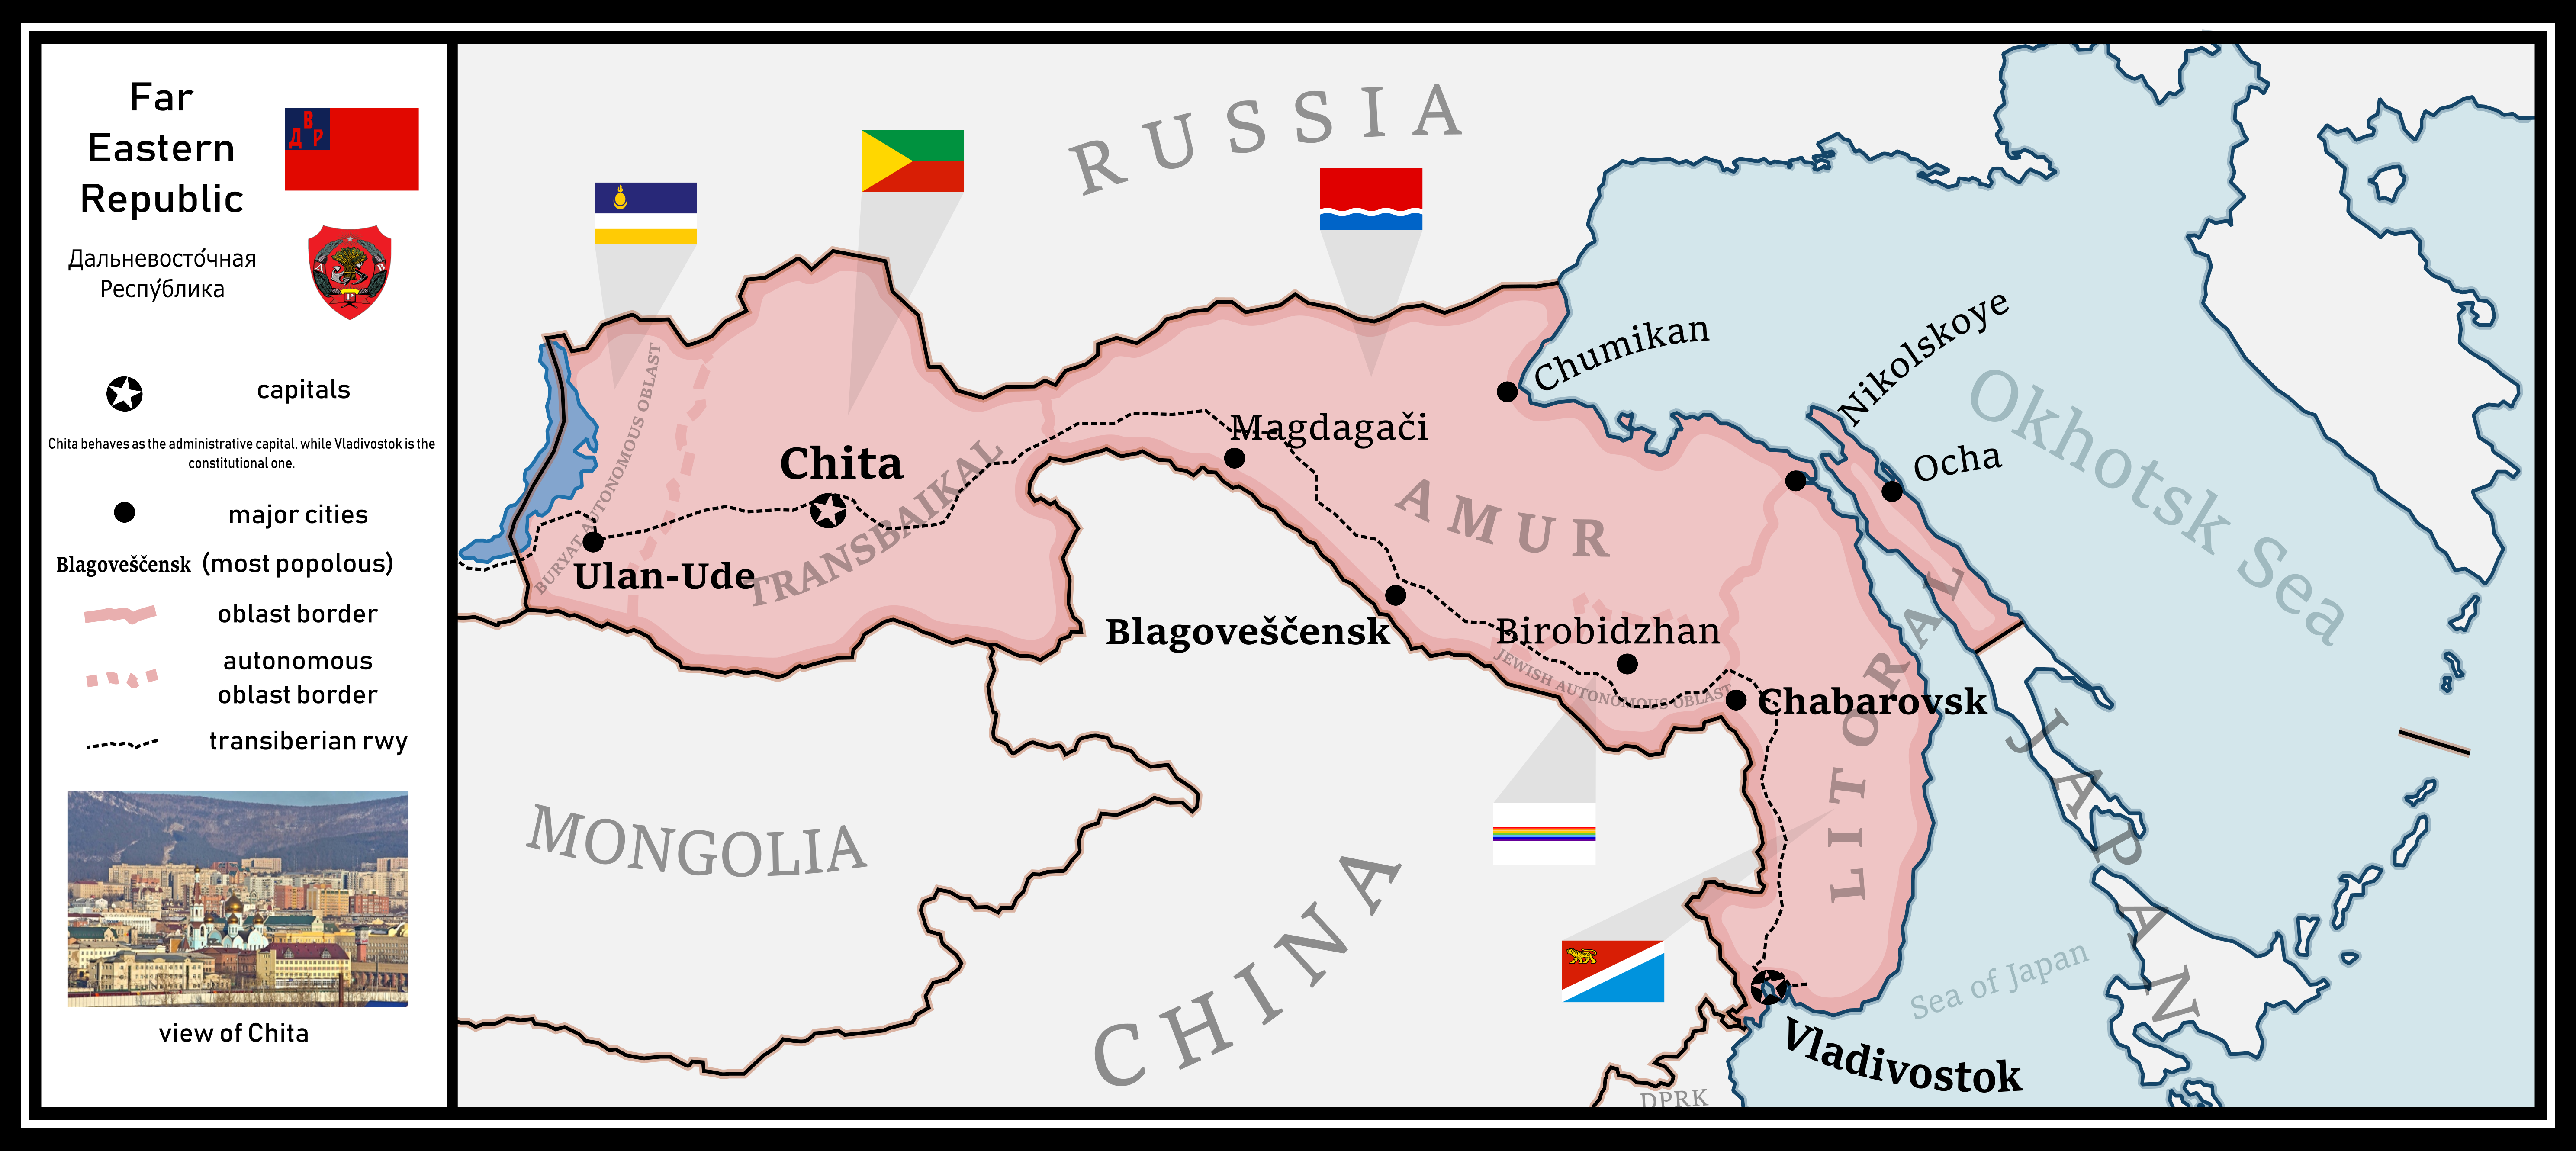 Far Eastern Republic